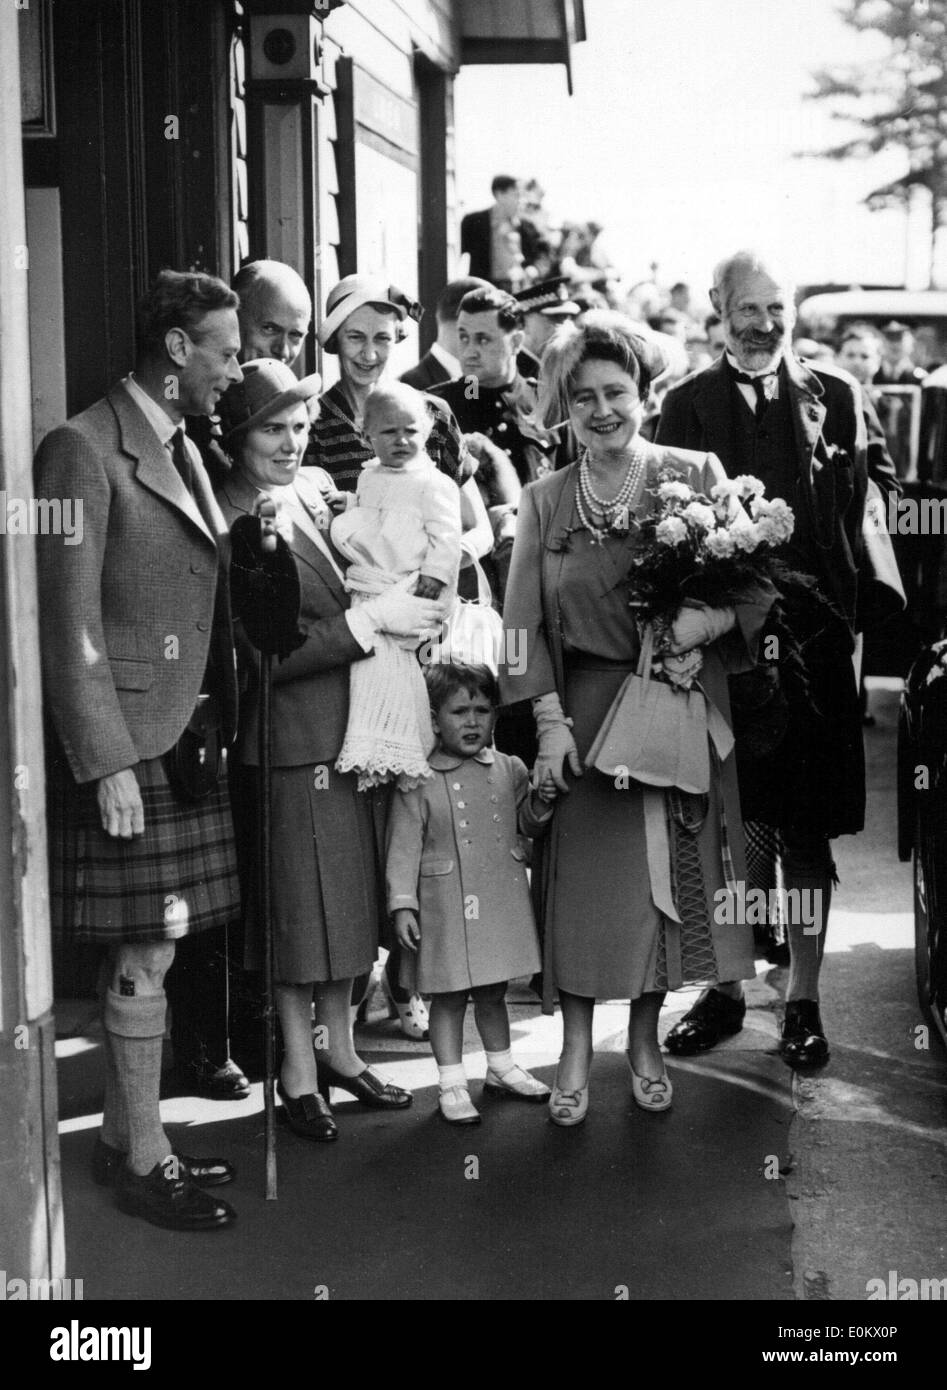 Membri del Windsor Royal famiglia arrivando a Balmoral Foto Stock